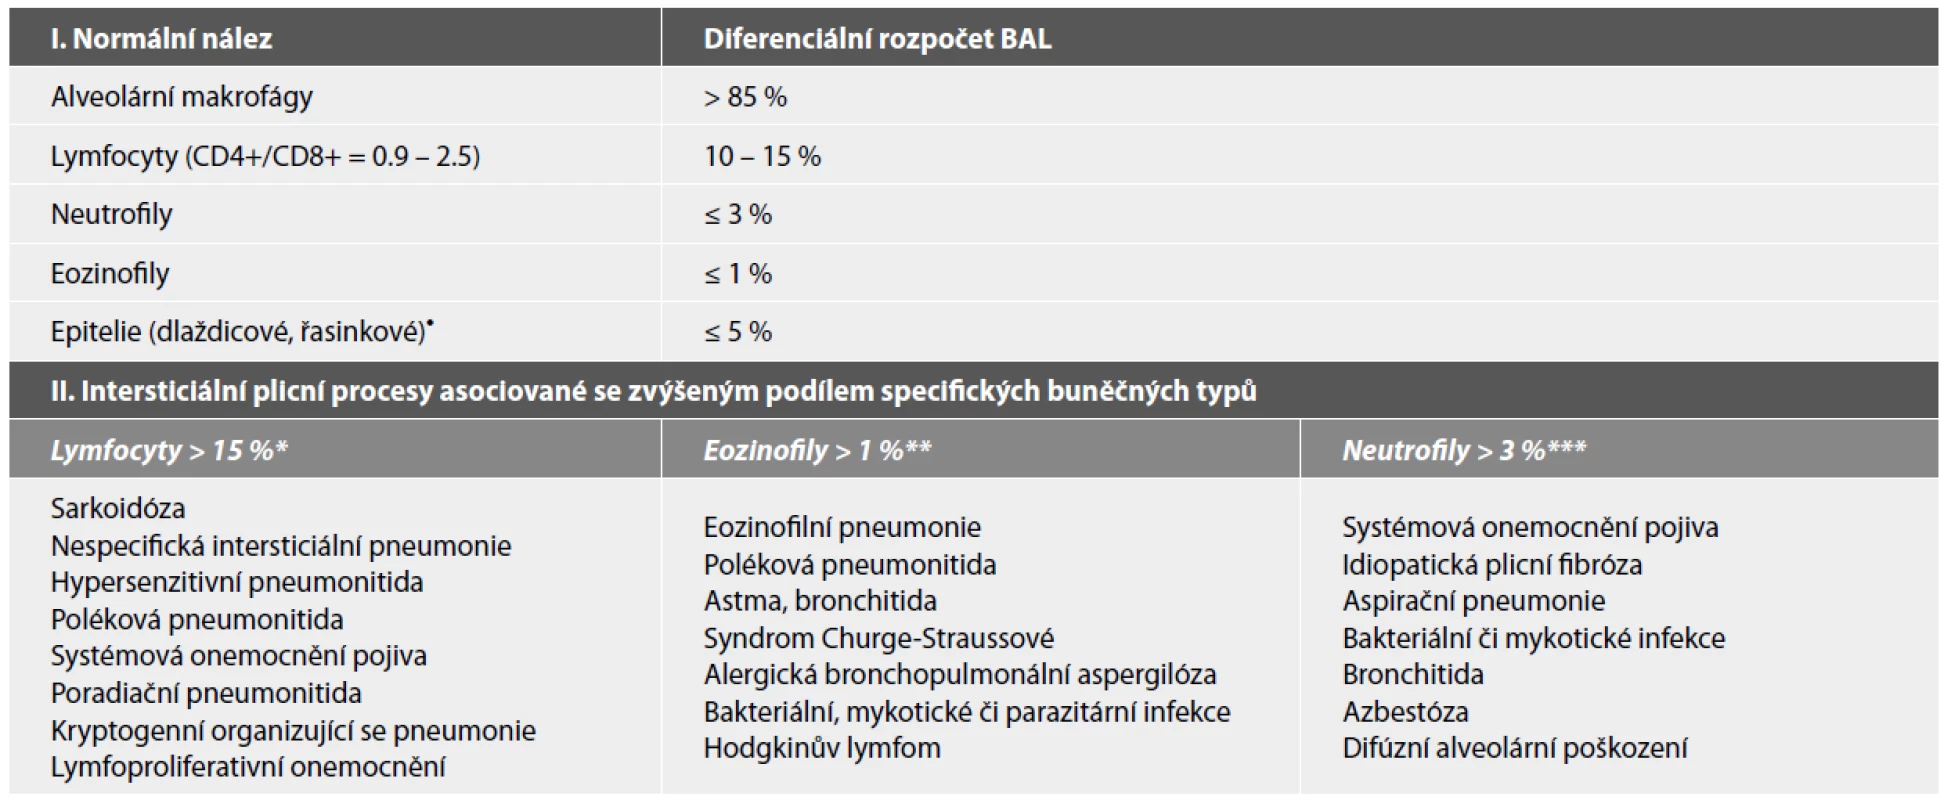 Přehled kvantitativního hodnocení bronchoalveolární laváže (BAL) dle zastoupení jednotlivých buněčných typů u zdravých dospělých nekuřáků
a nejčastější intersticiální plicní procesy asociované s abnormálním rozpočtem BAL.